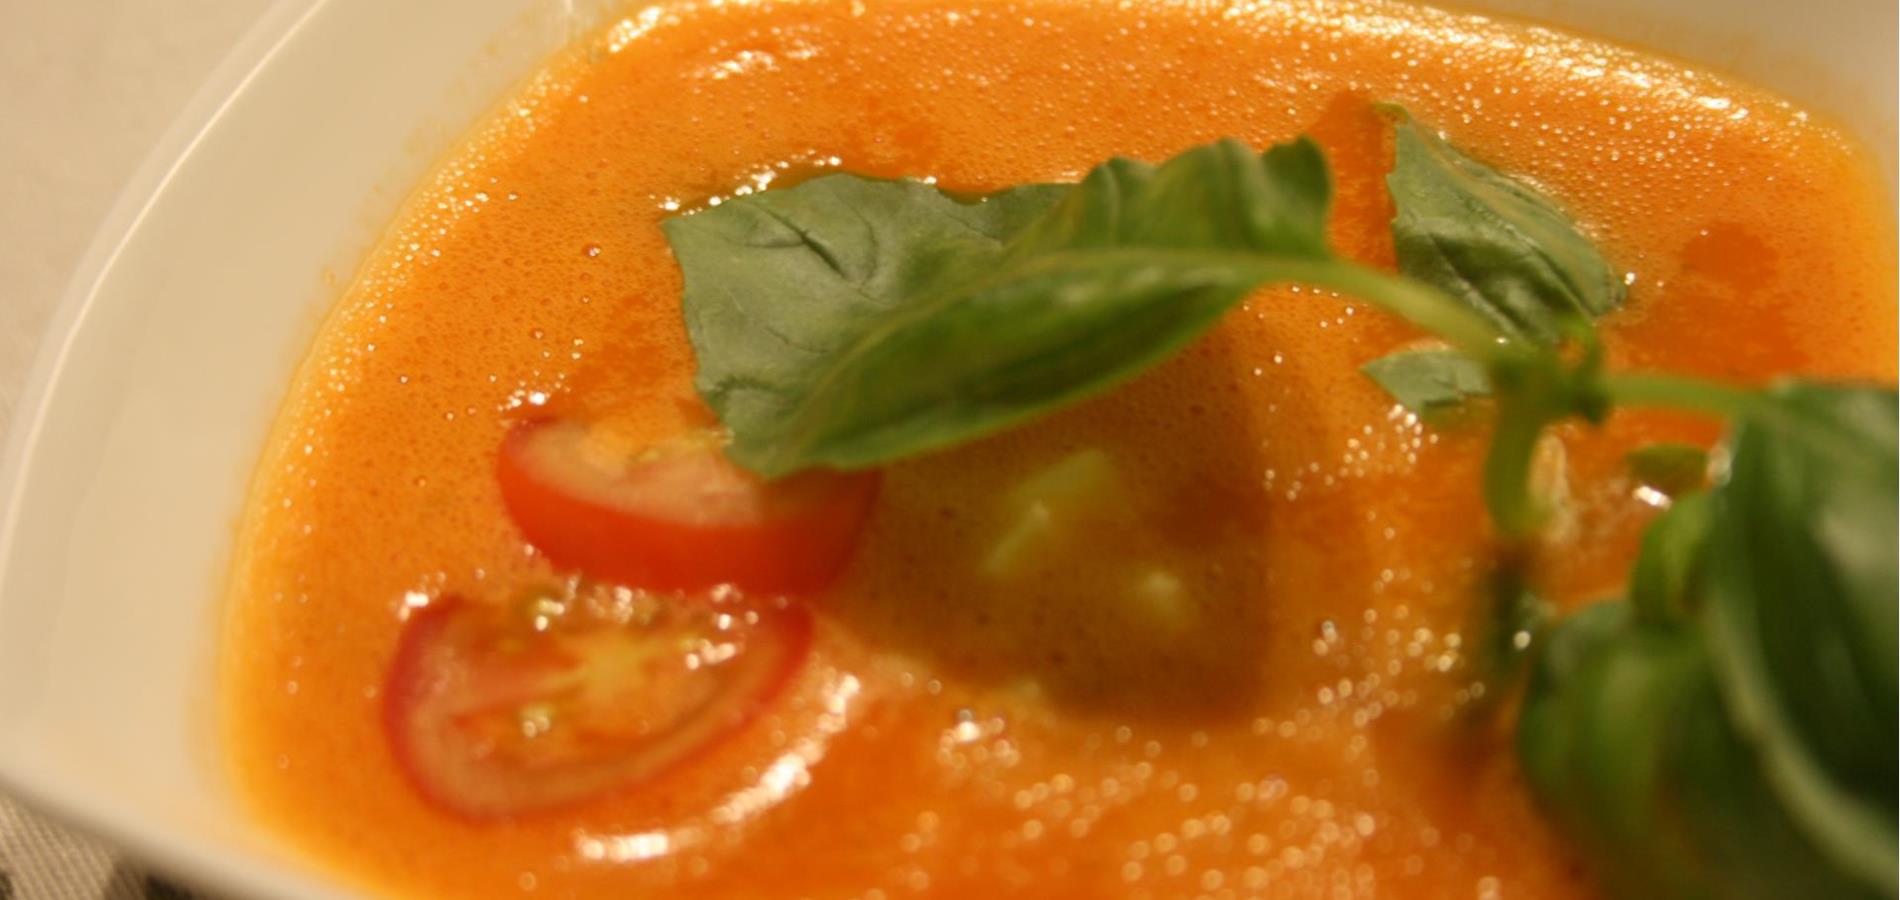 Zuppa di pomodoro con mozzarella e basilico fresco